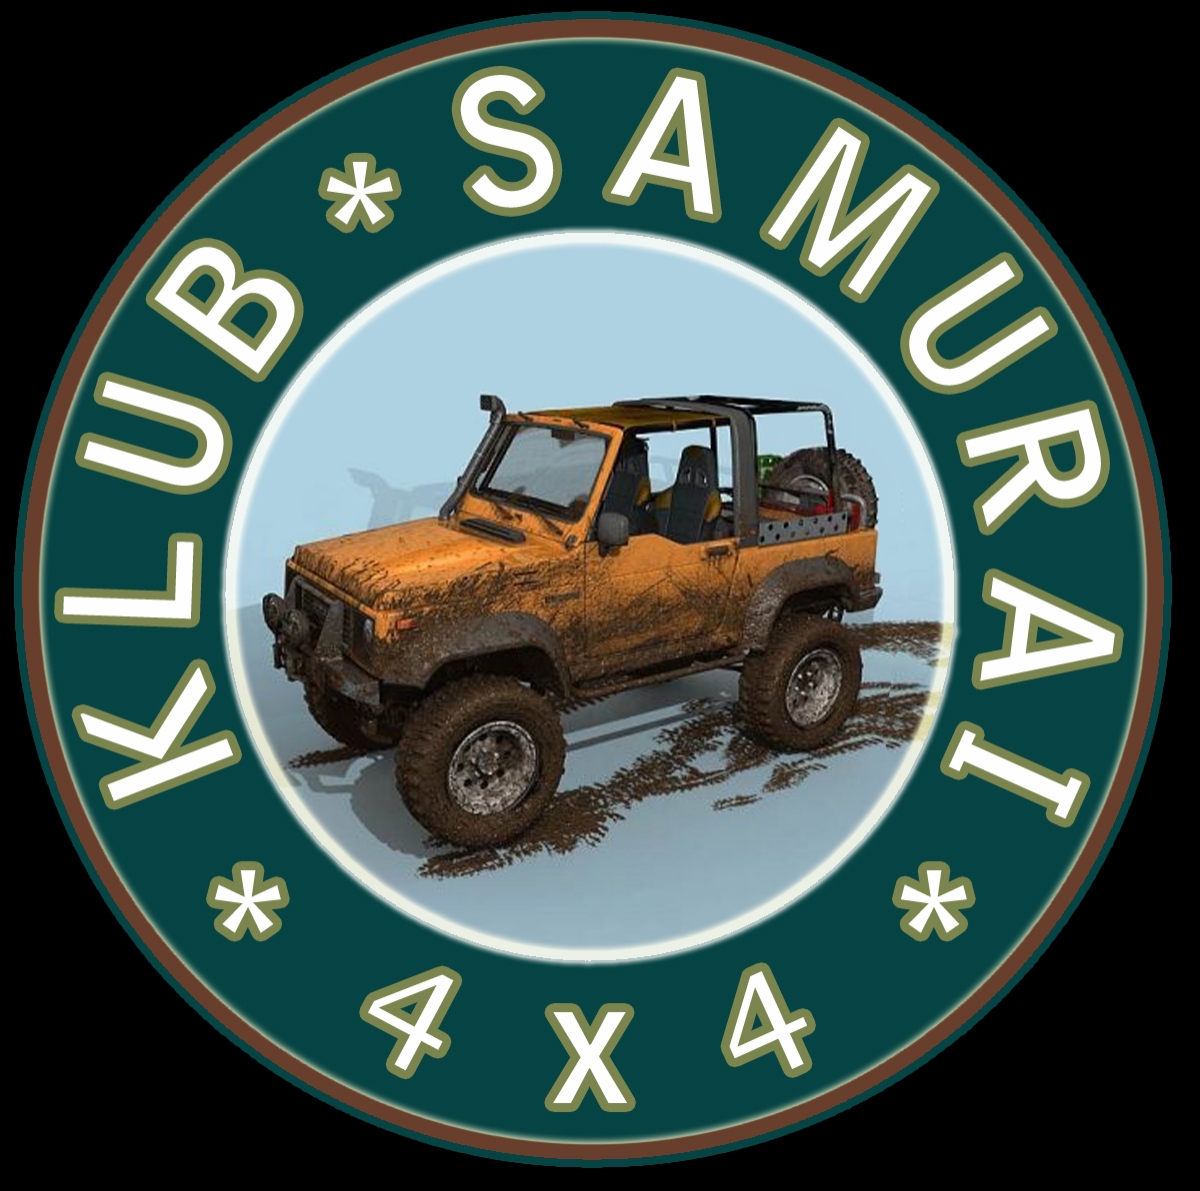 Klub Samurai 4x4